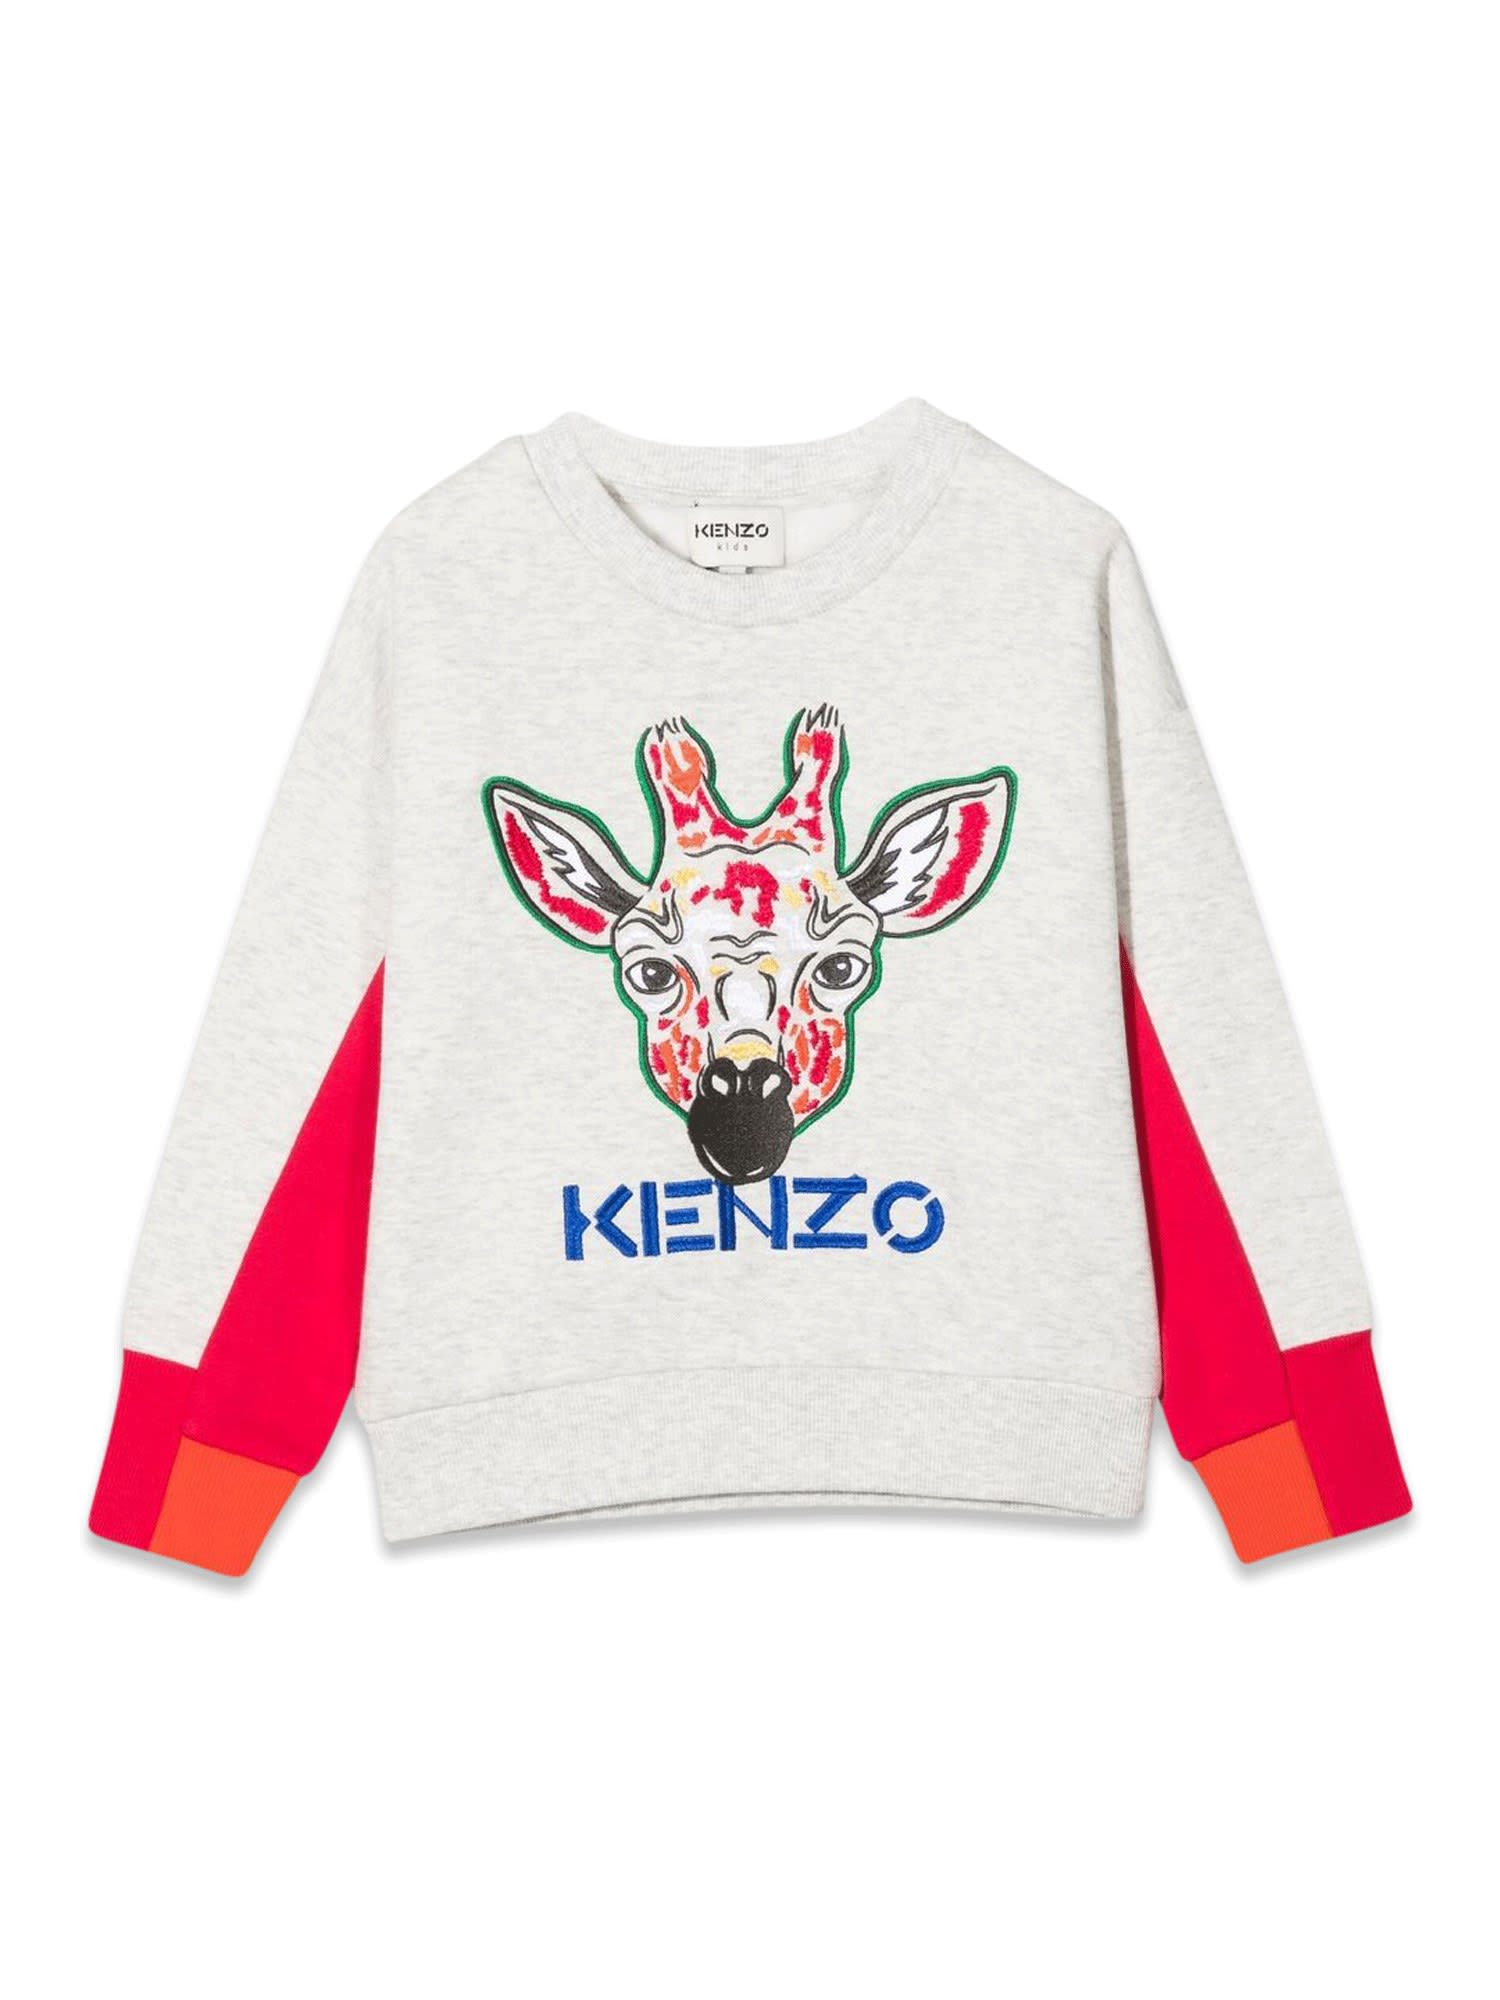 Kenzo Giraffe Crewneck Sweatshirt